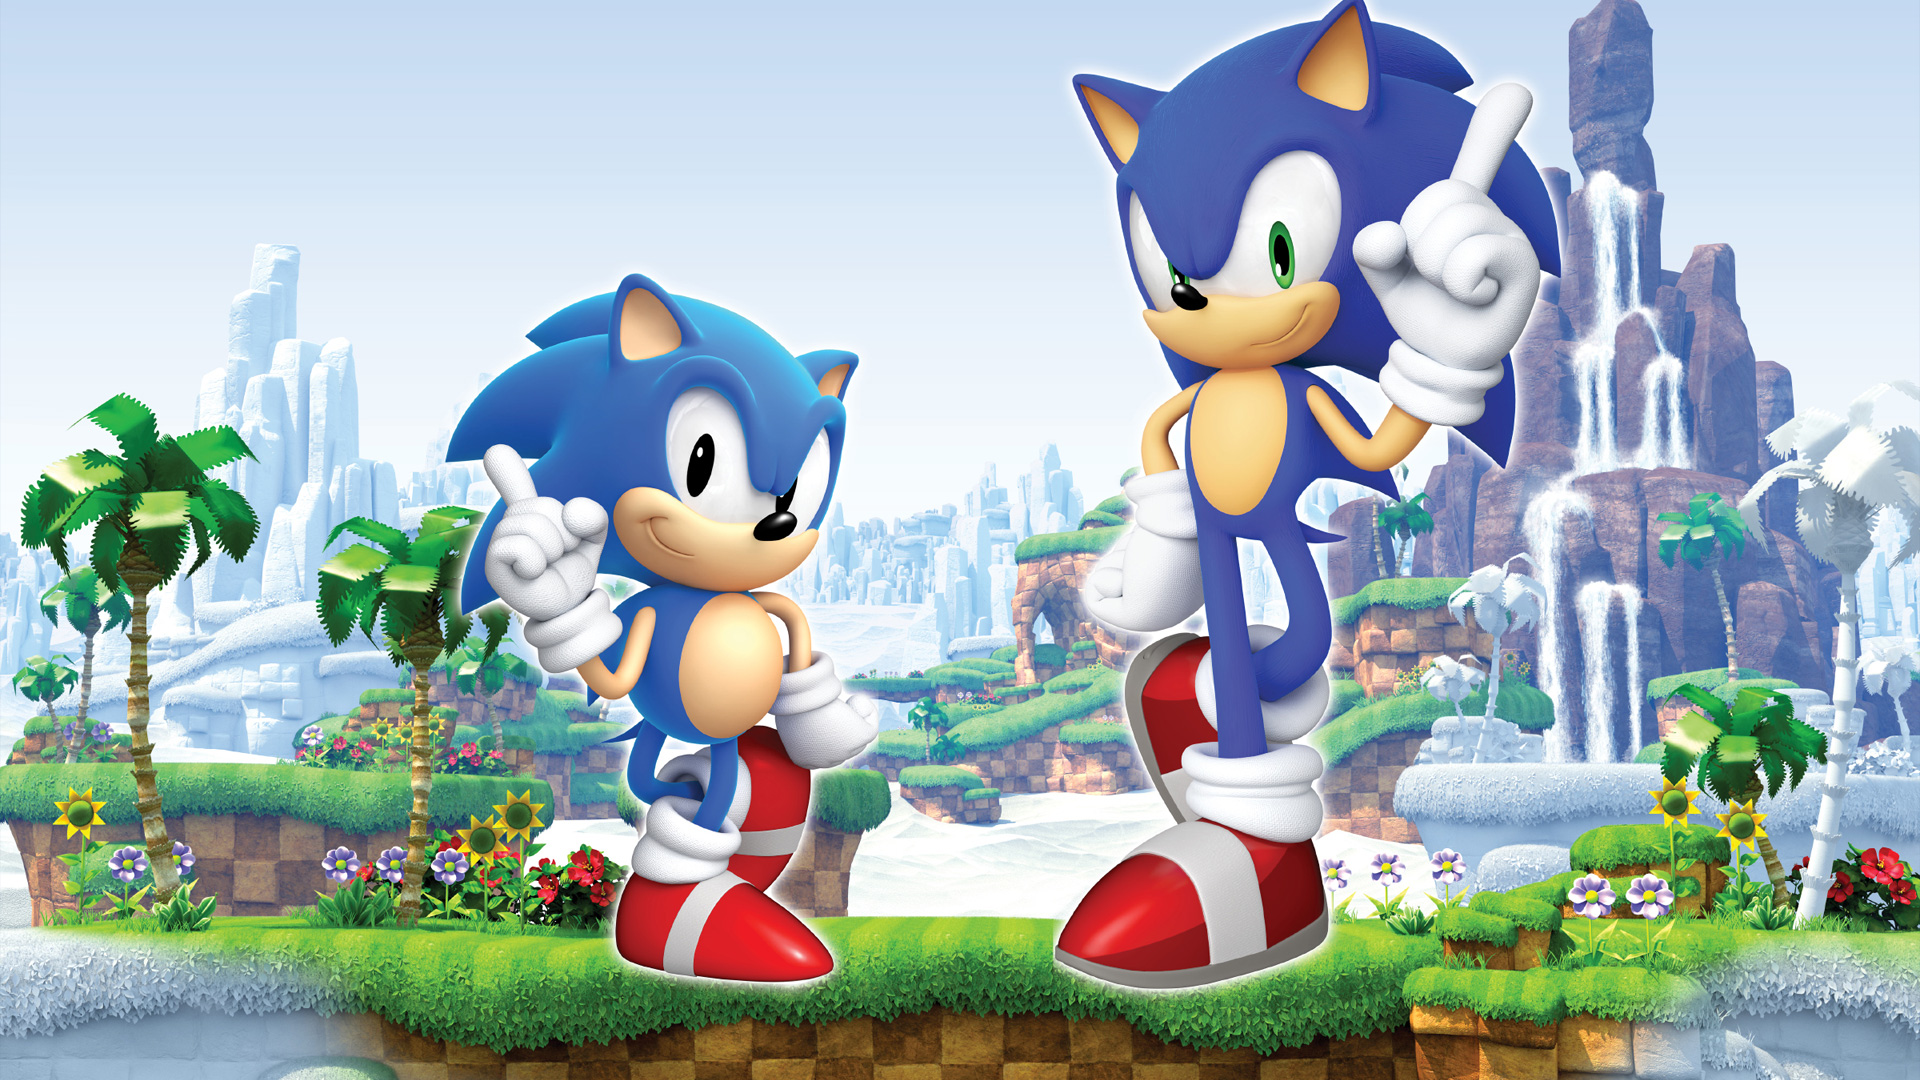 Imagenes De Sonic The Hedgehog En Full HD